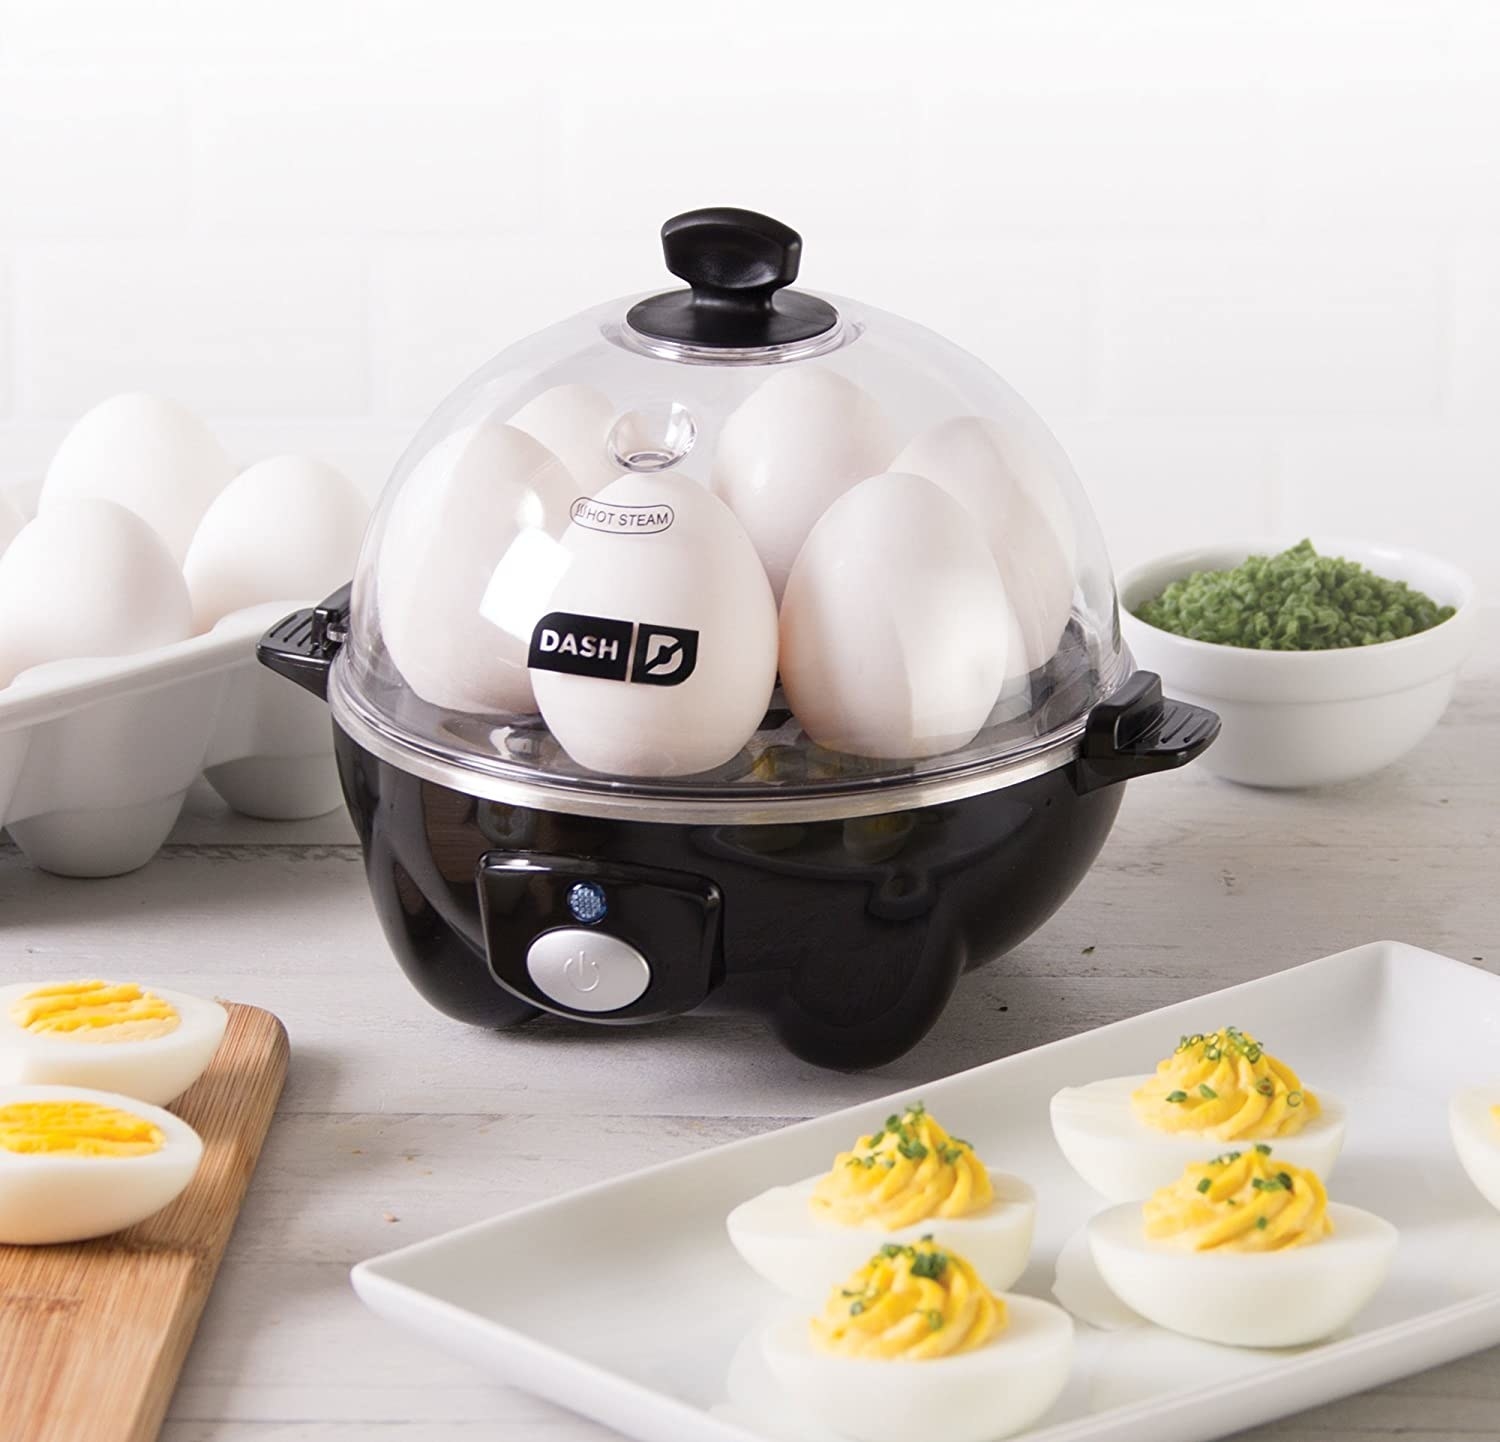 The Dash egg cooker making hard-boiled eggs